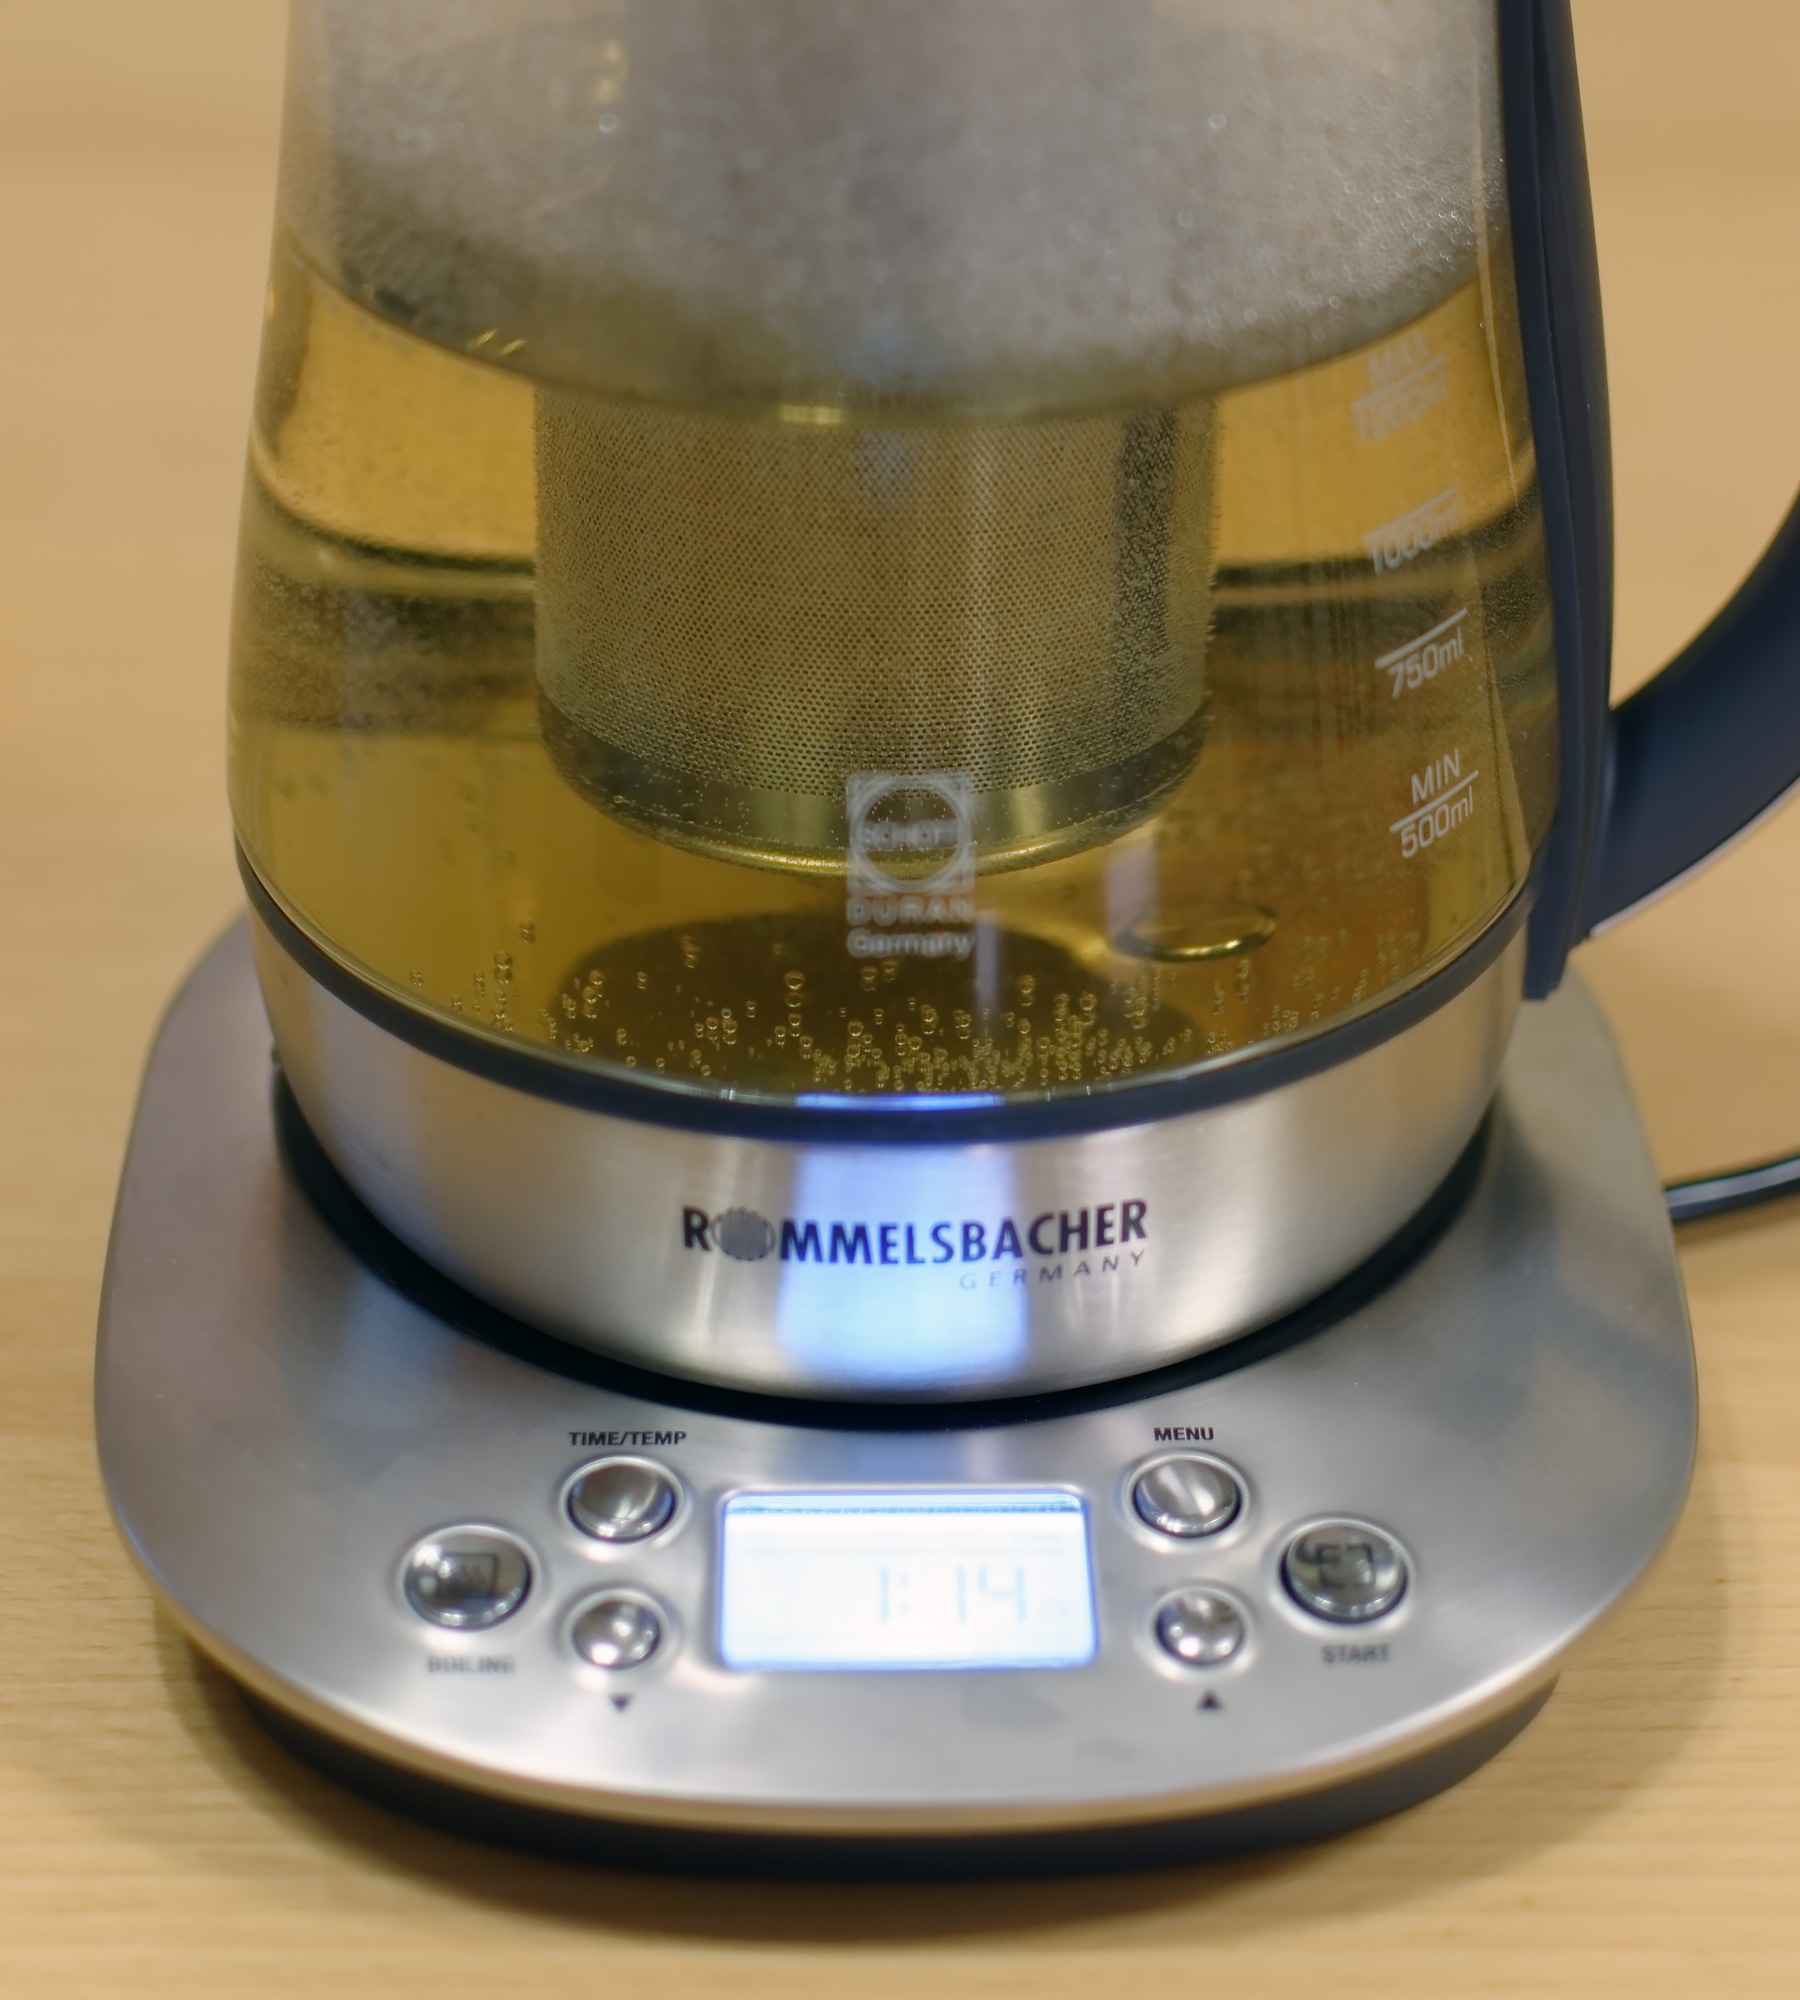 Чайник электрический Rommelsbacher TA 1400 - купить чайник электрический TA 1400 по выгодной цене в интернет-магазине